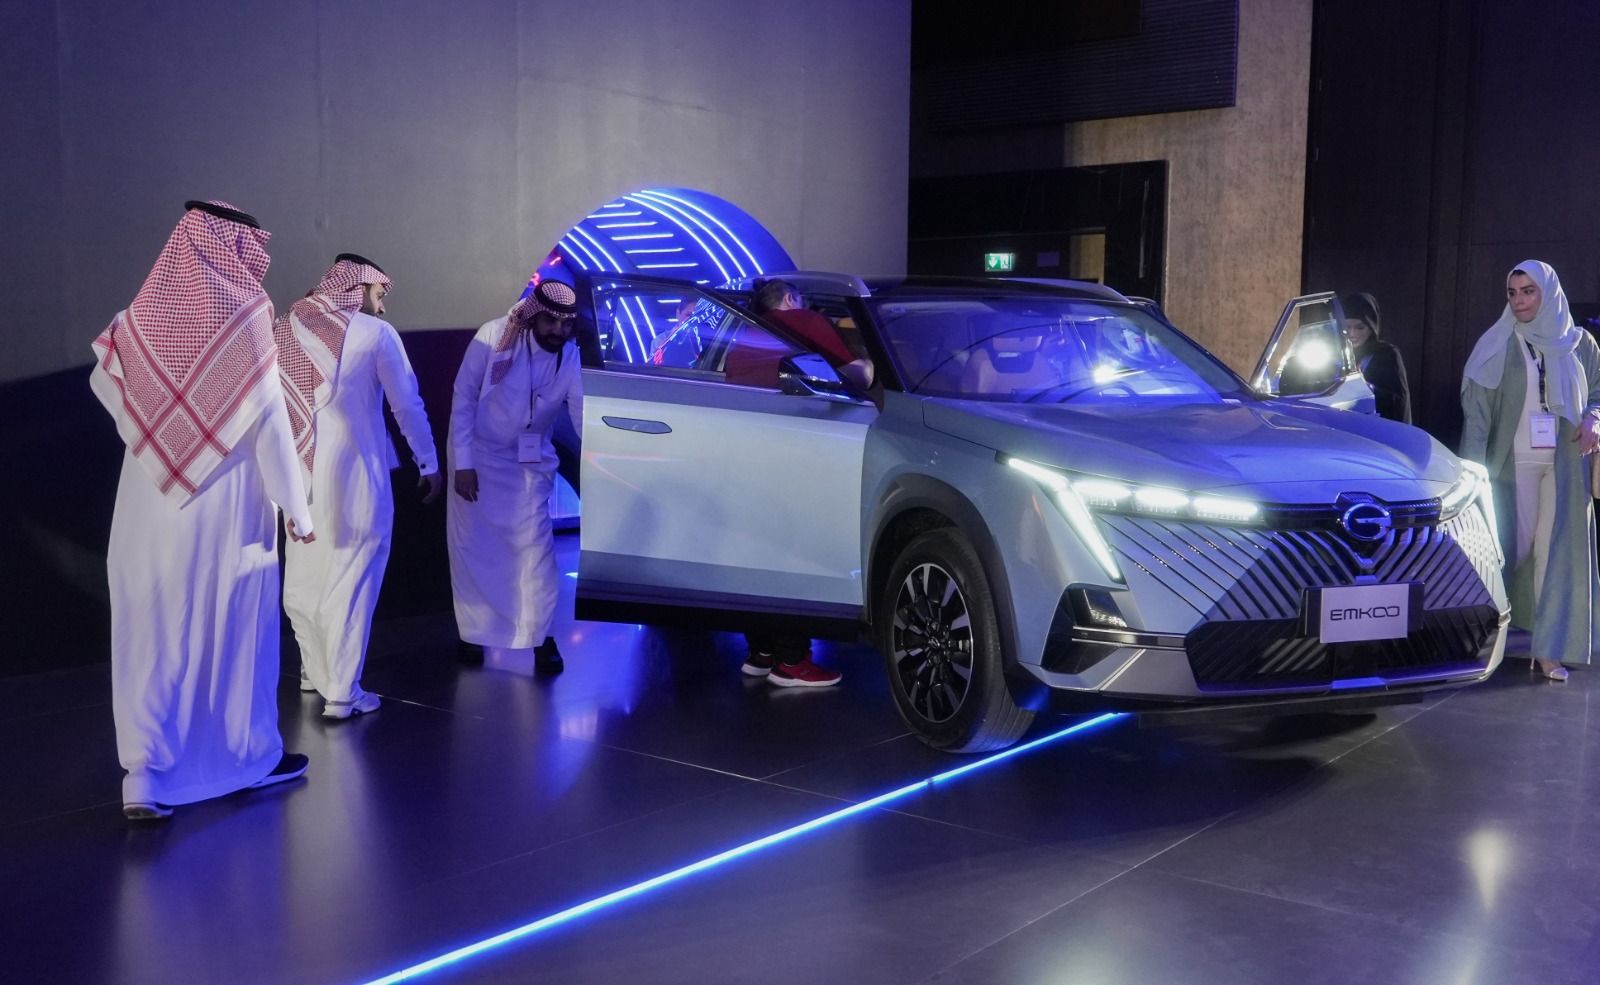 شركة الجميح للسيارات تُعلن عن استراتيجية "جي أيه سي موتور" الجديدة في السوق السعودي وعن إطلاق أحدث موديلاتها جي أيه سي EMKOO و EMZOOM GS3 3